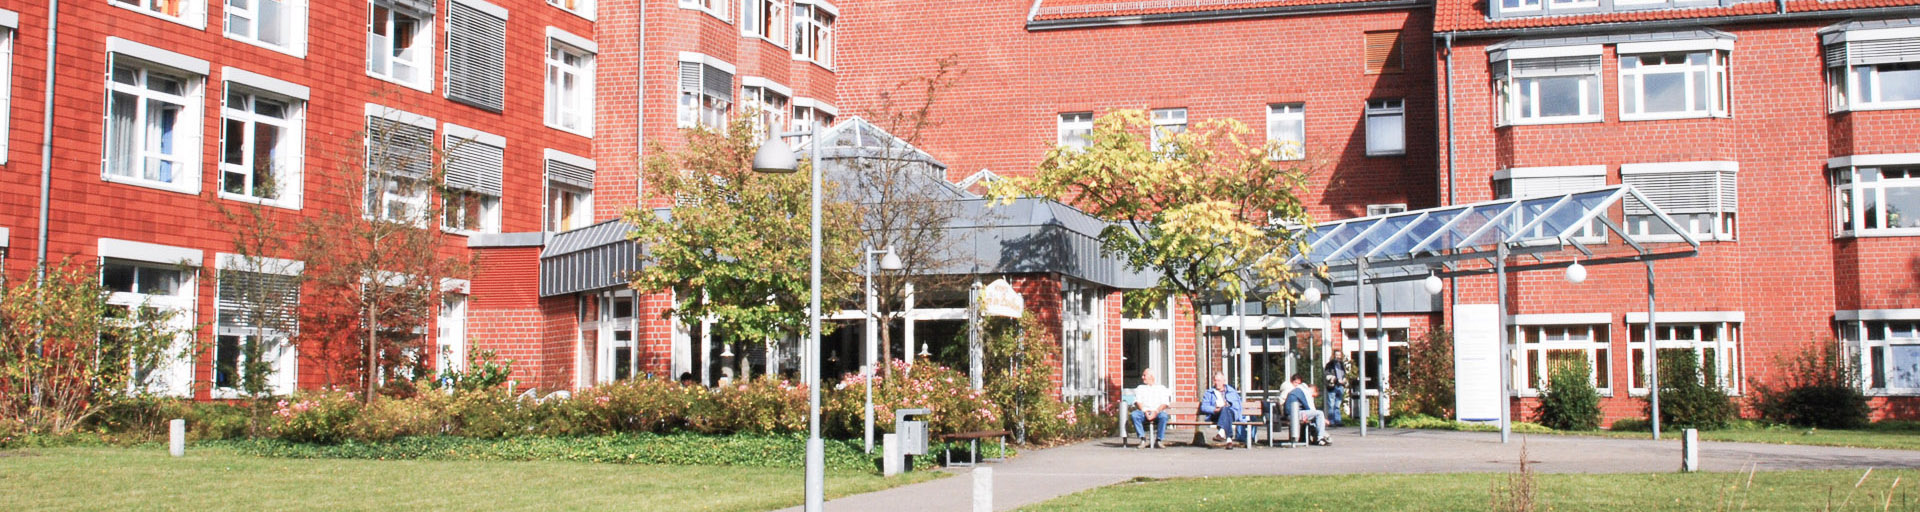 Eingangsbereich des Heidekreis Klinikums in Soltau